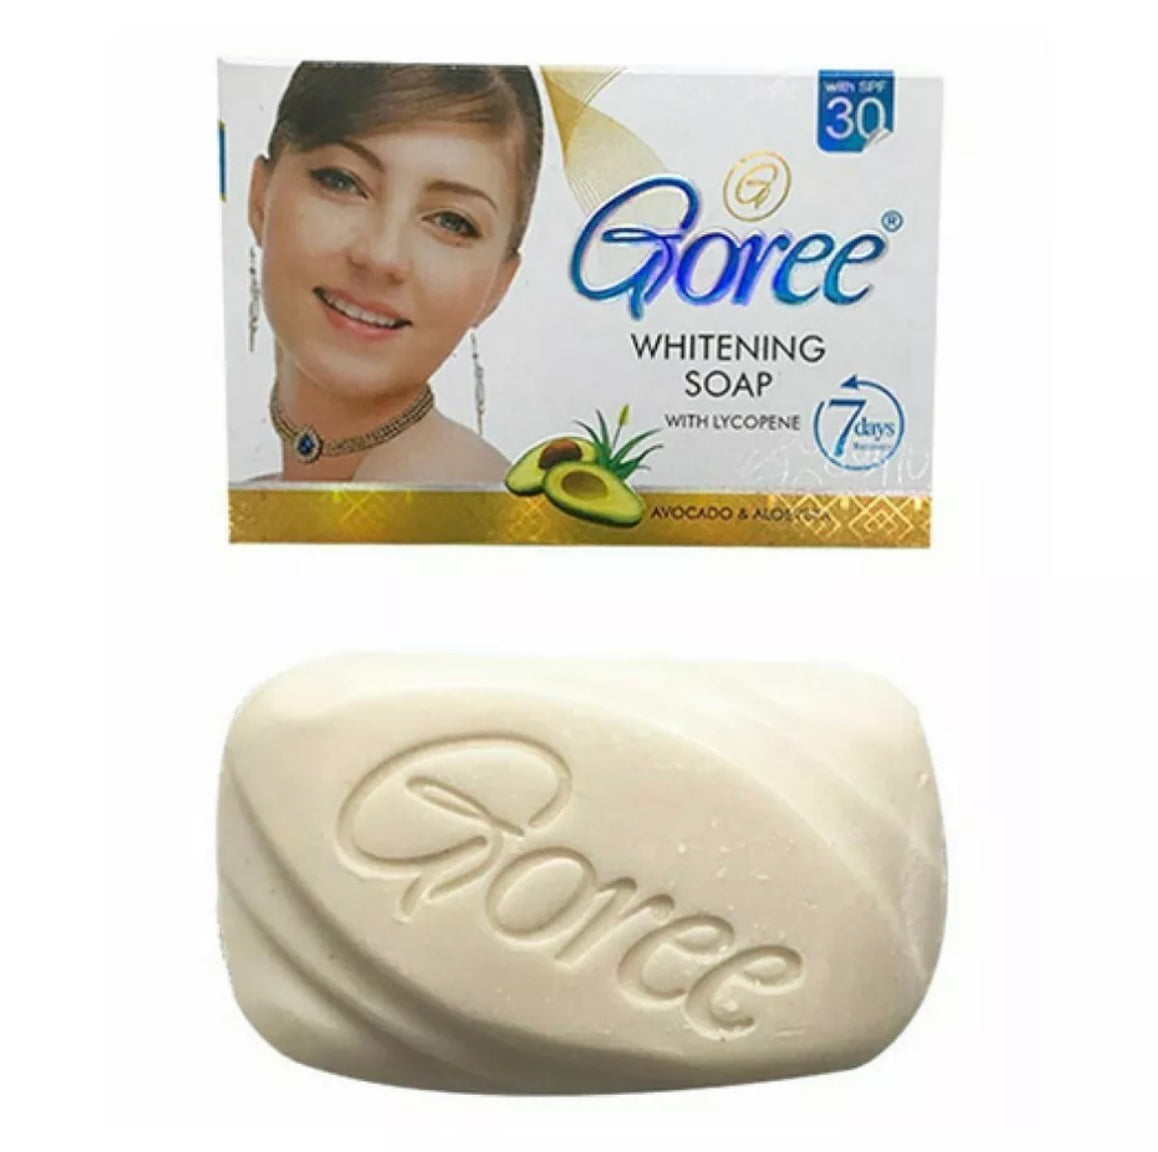 Goree Whitening Soap with Lycopene